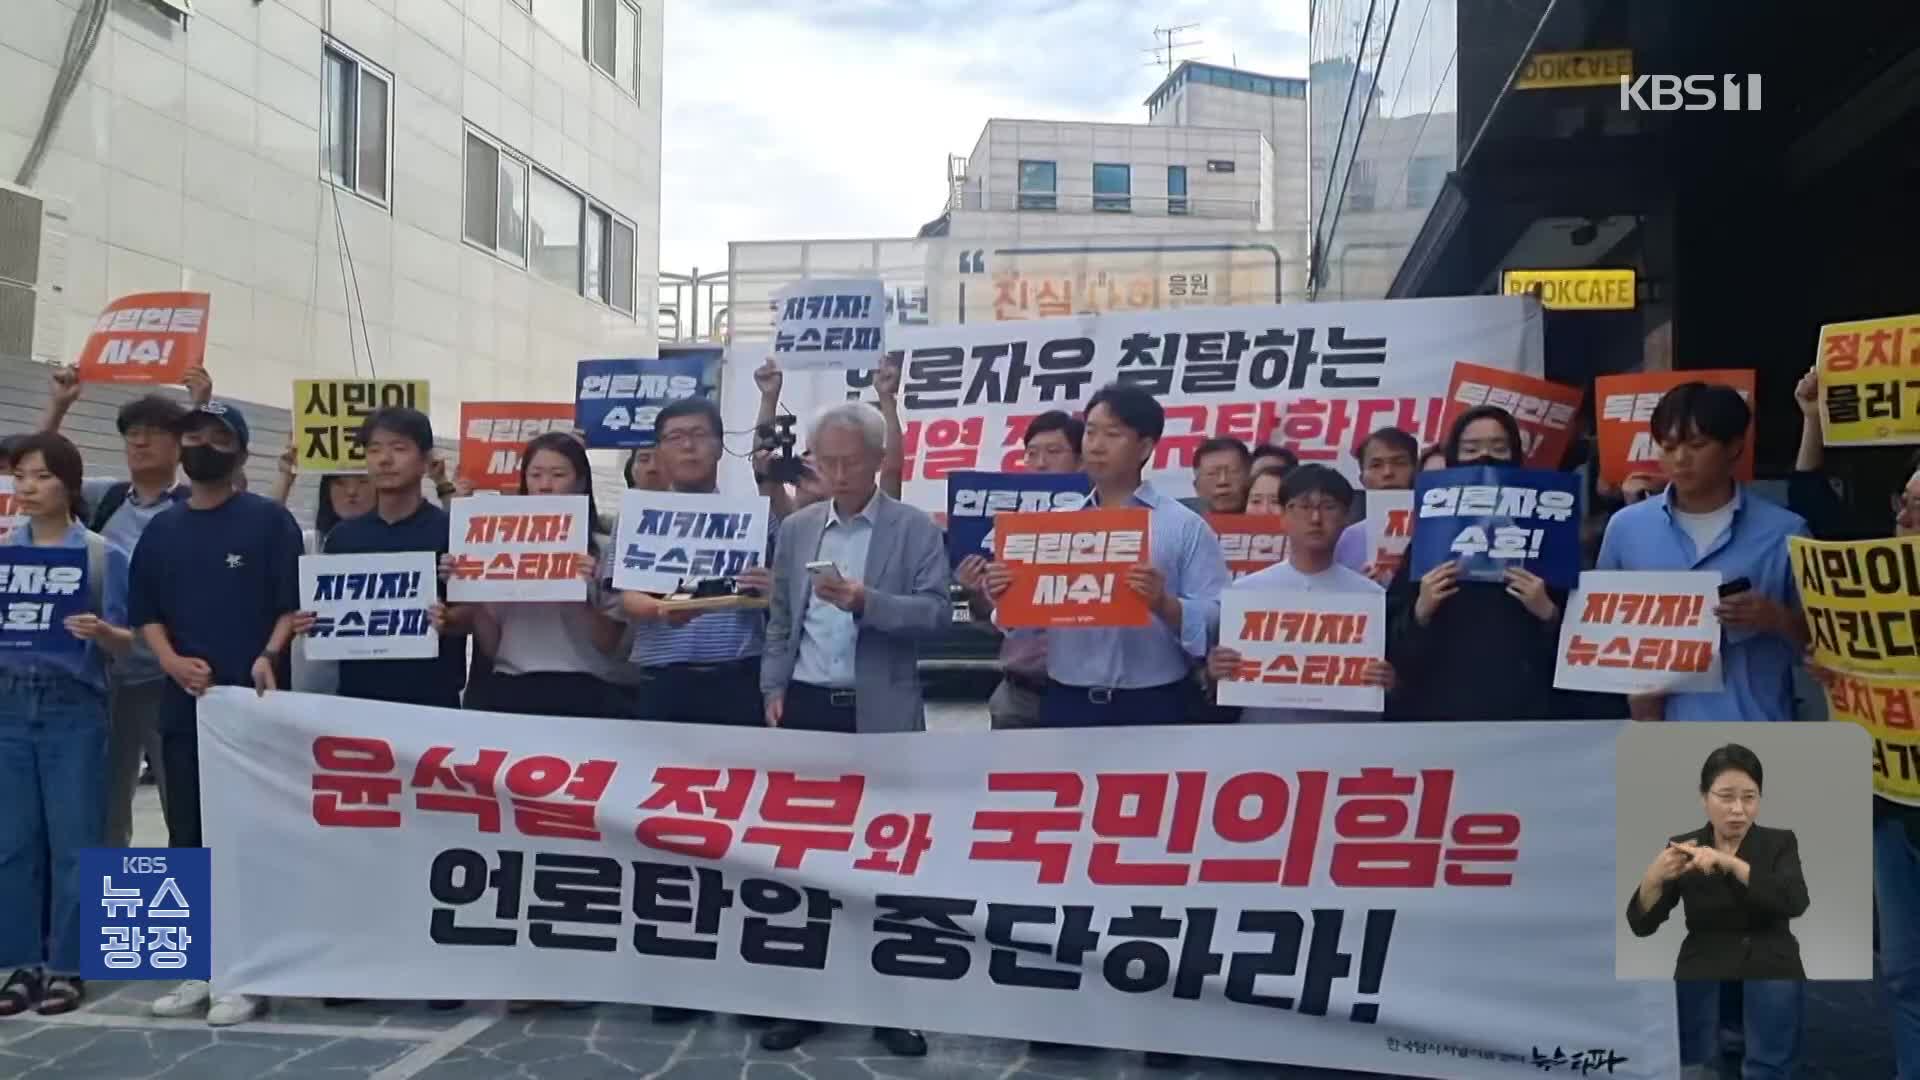 뉴스타파 강력 반발…현업단체 “탄압” 규정